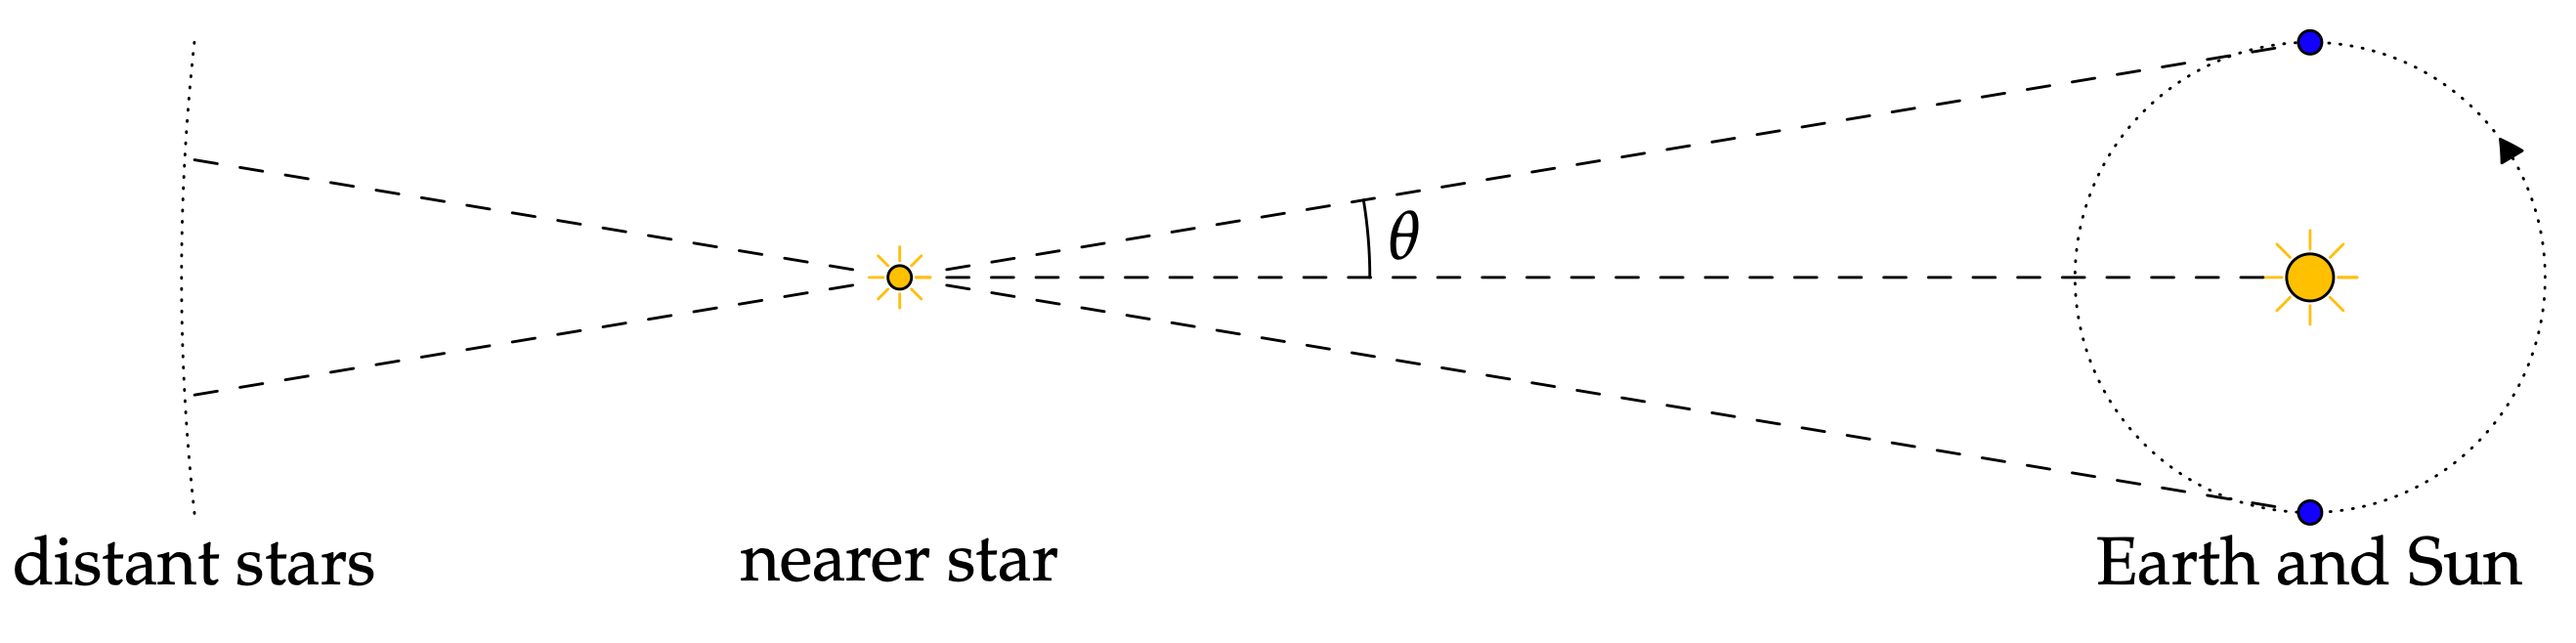 דוגמה לאסטרונומיה - תמונה מאת www.math.uci.edu